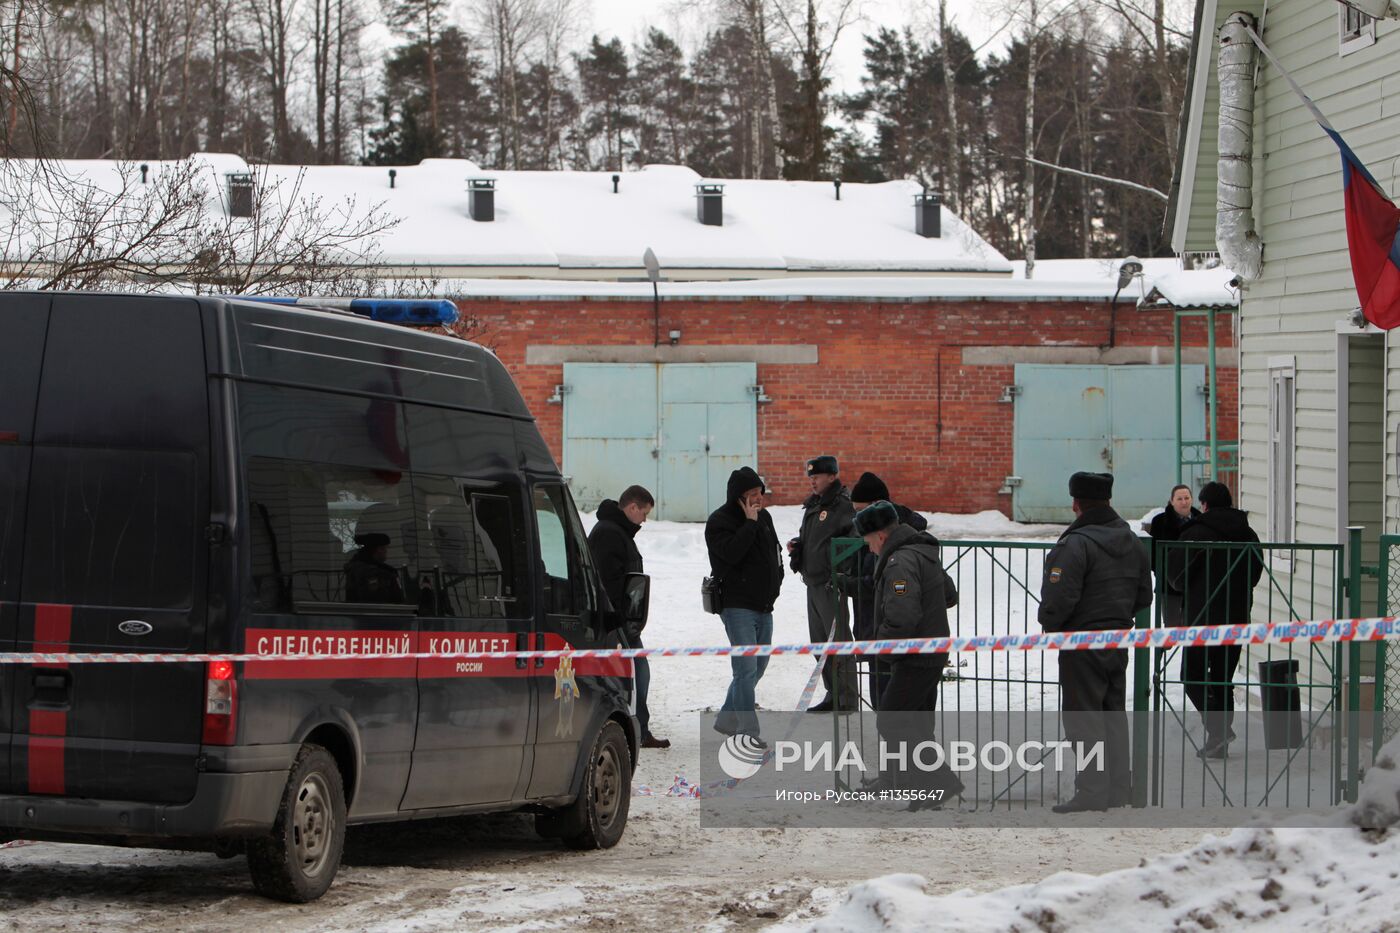 Взрыв произошел у здания полиции в Санкт-Петербурге